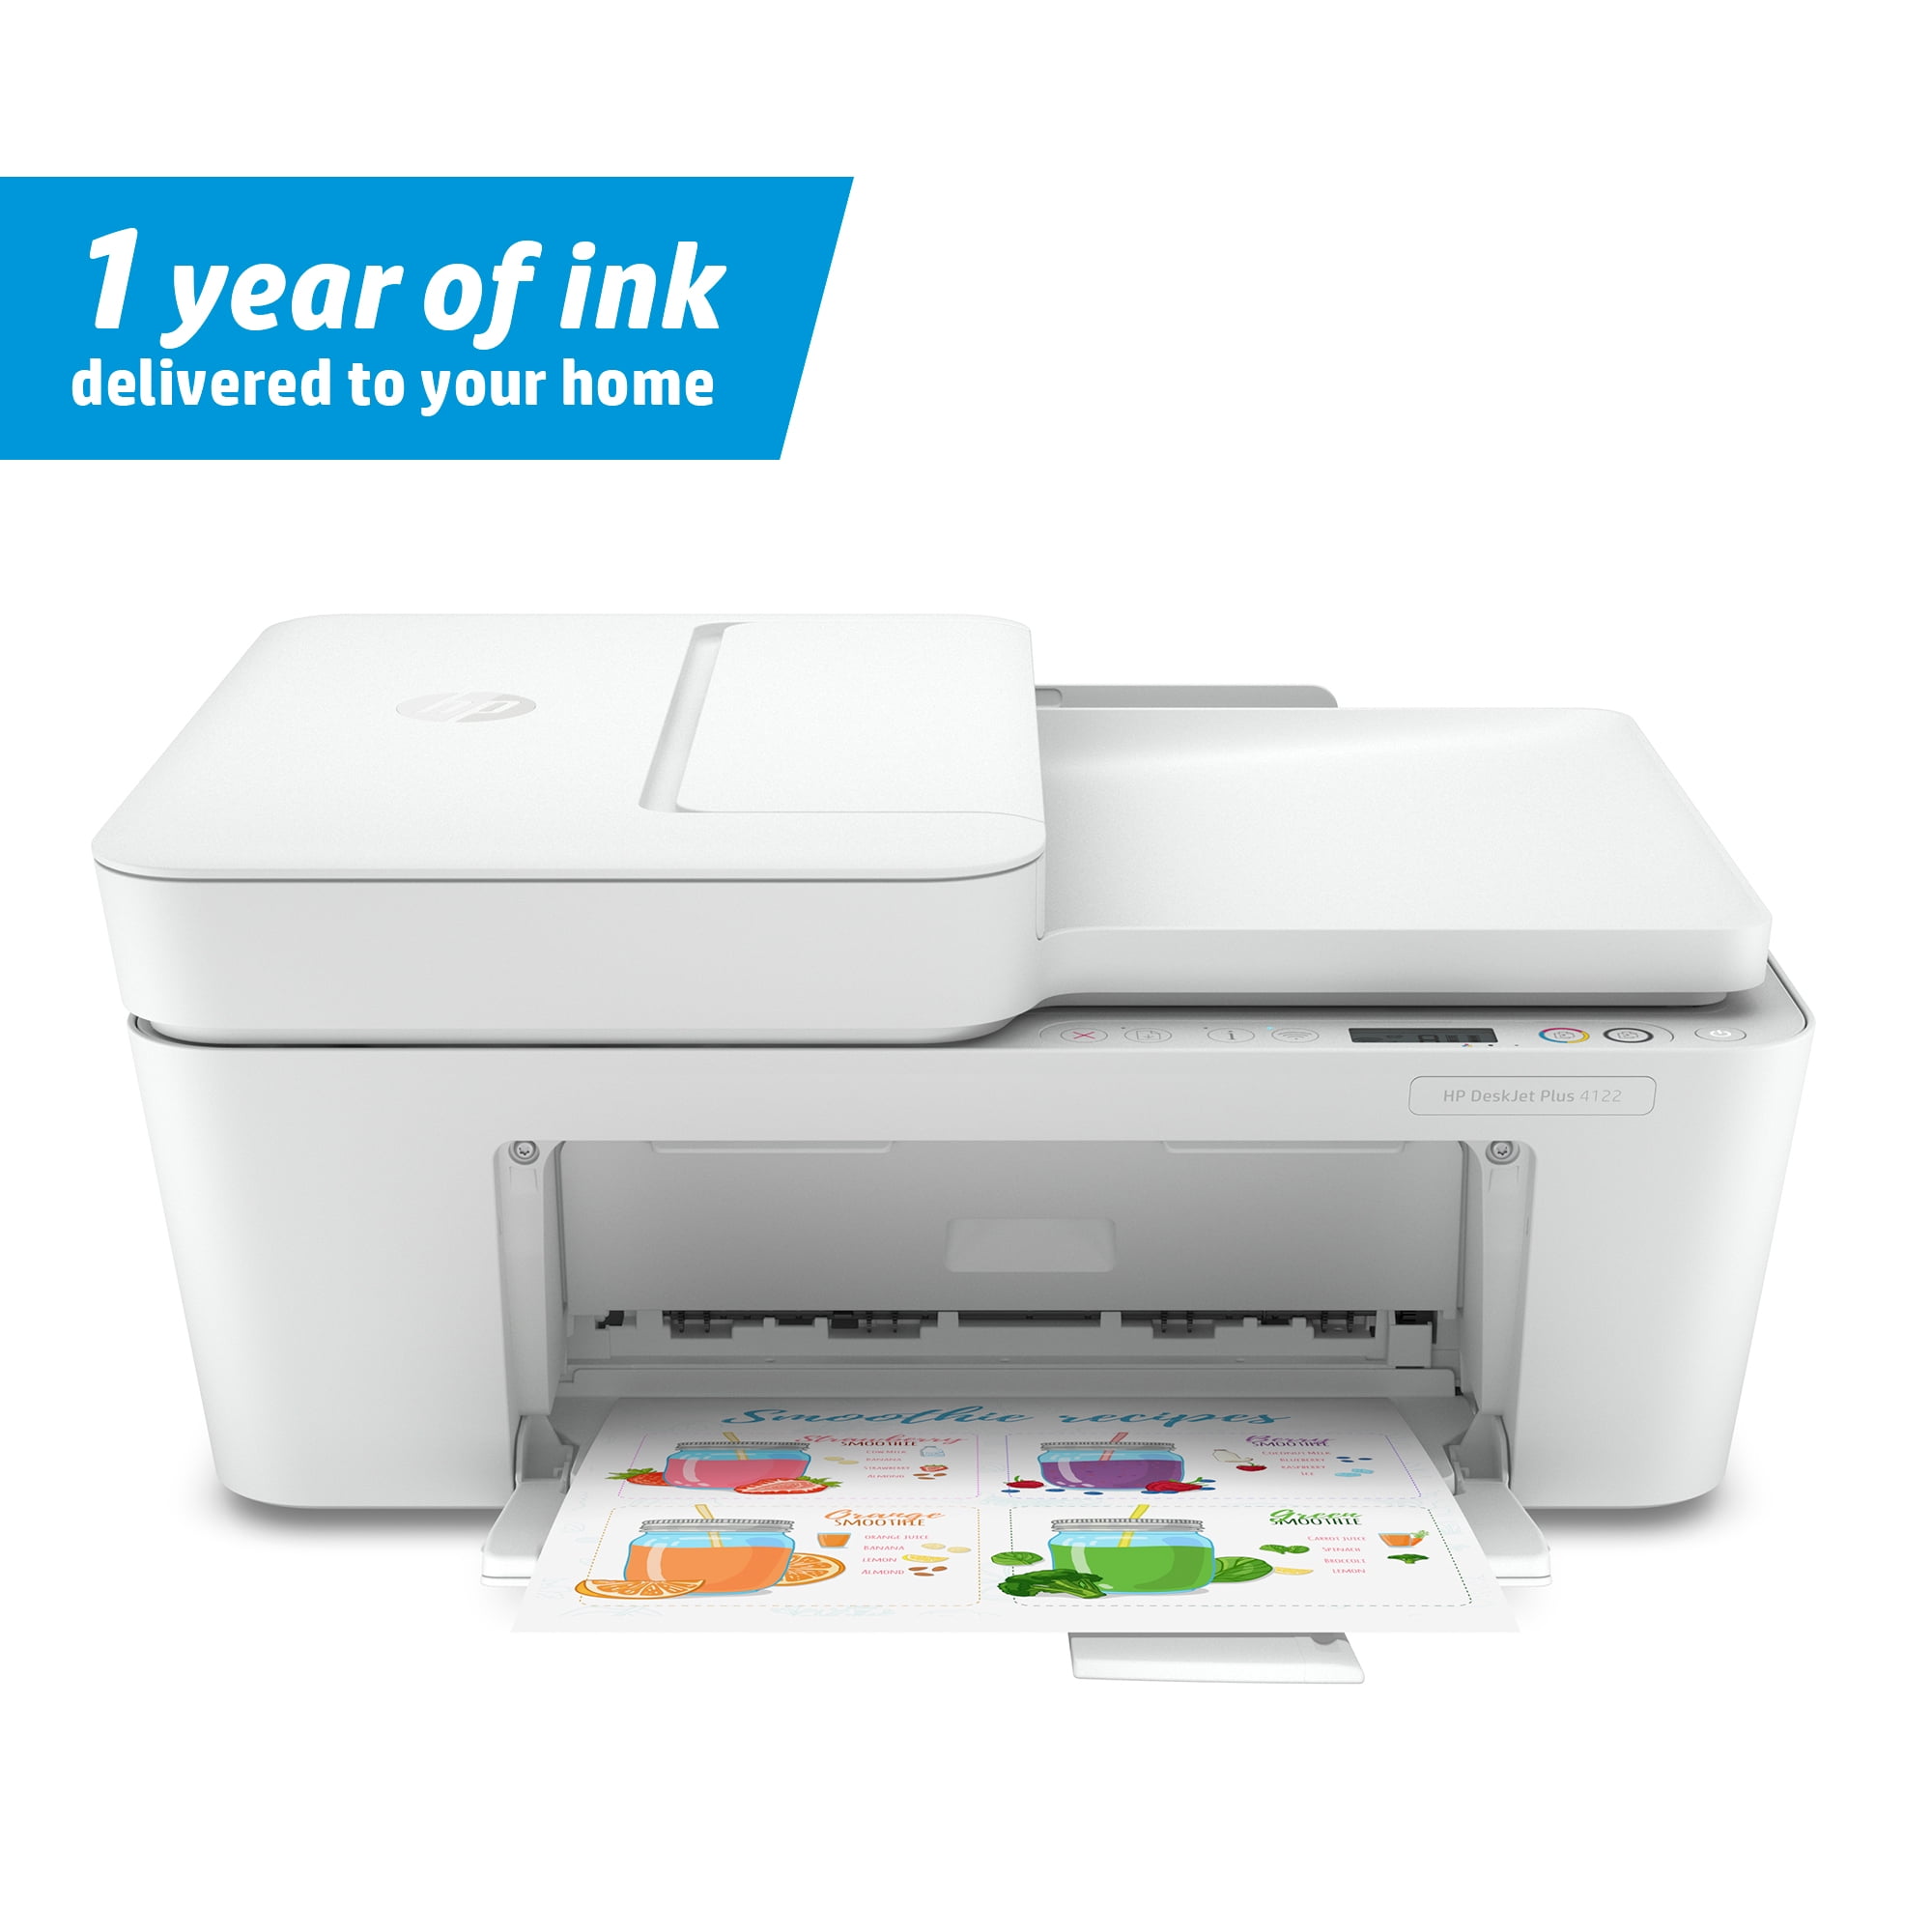 Fax USB HP DeskJet Plus 4122 Tintenstrahl-Multifunktionsdrucker A4 Drucker WLAN Kopierer Scanner 